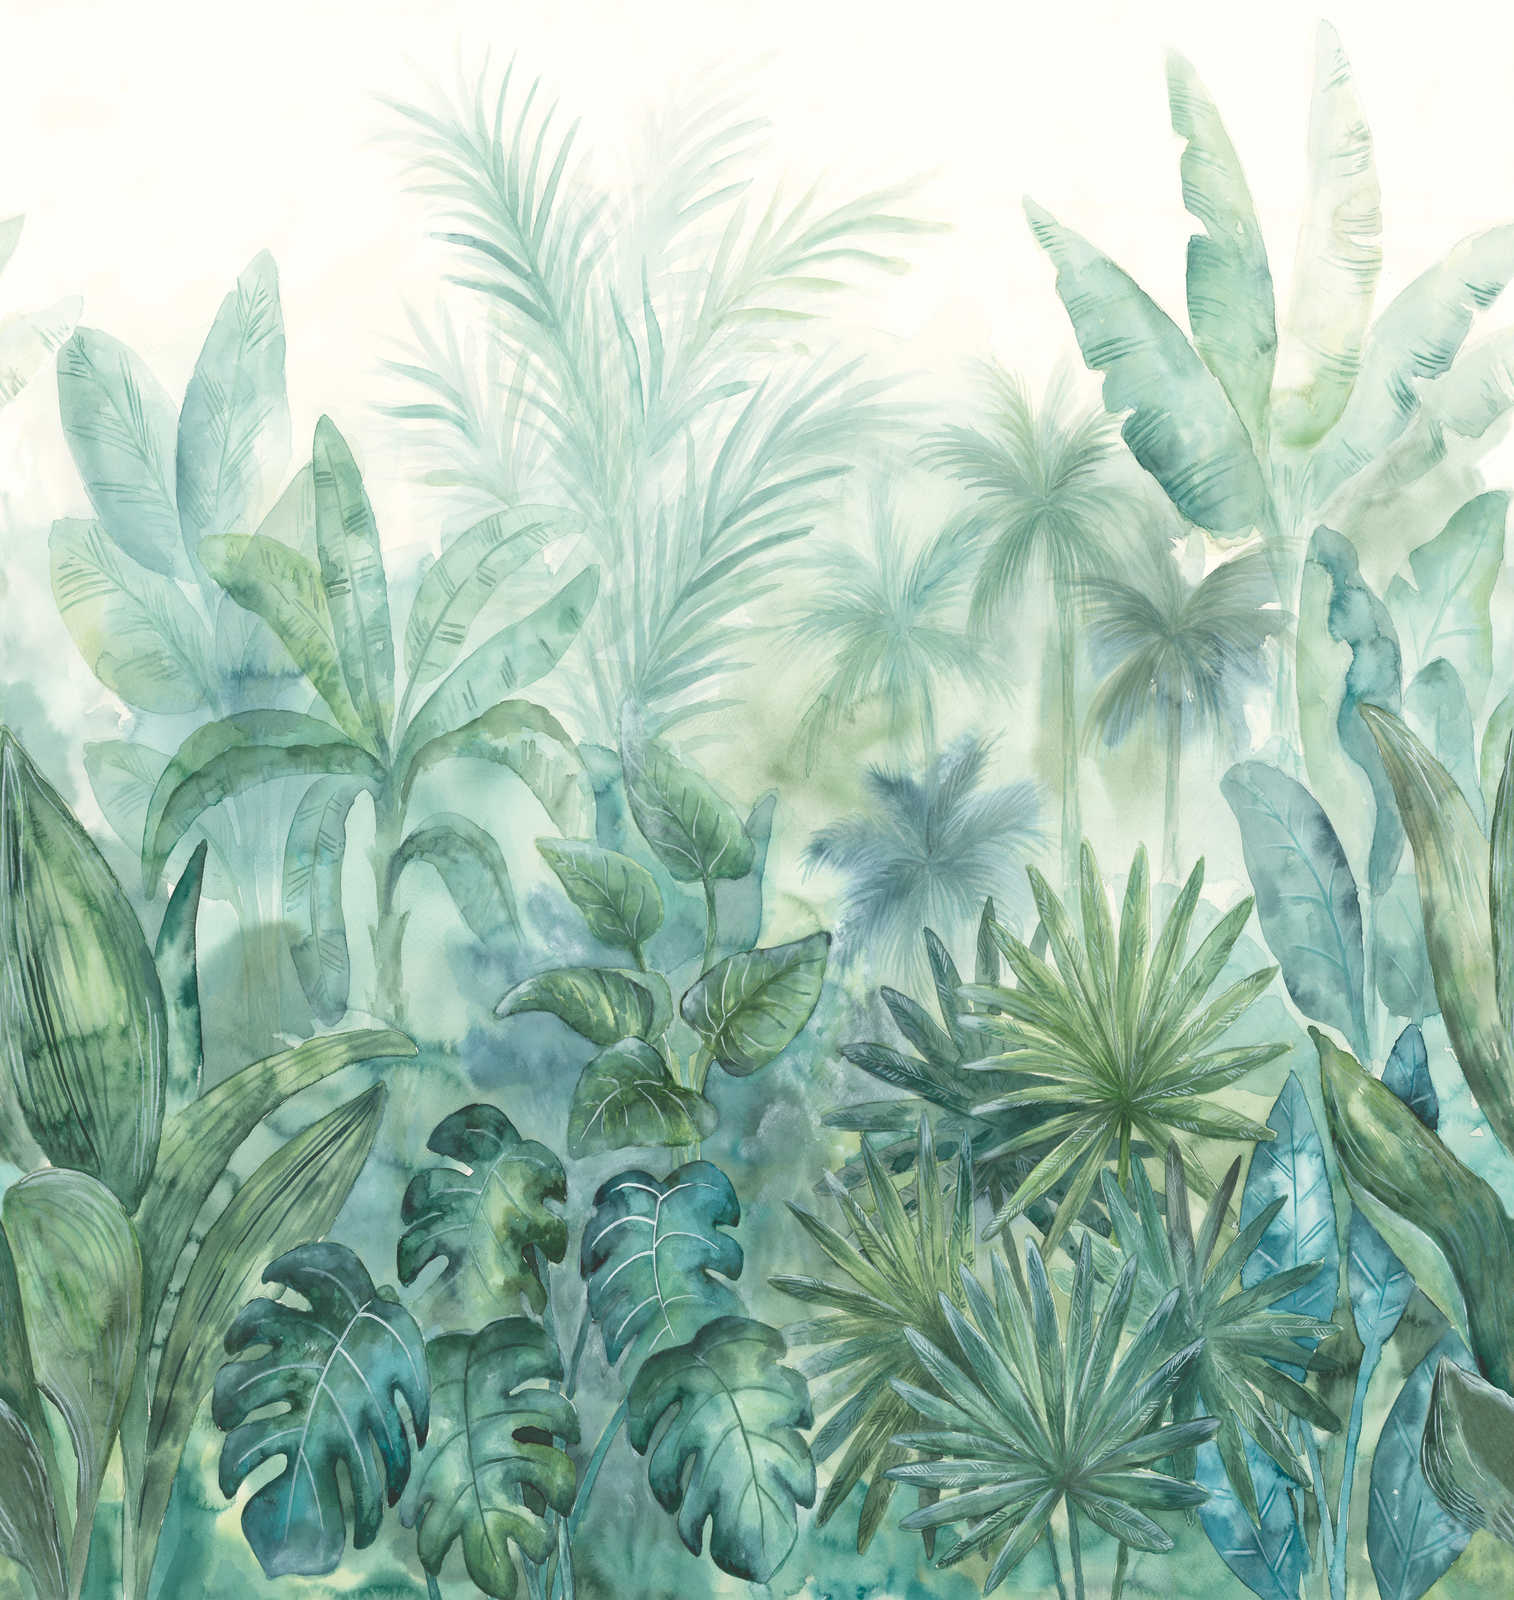             Tapete mit Dschungelmotiv in Aquarelloptik – Grün, Blau, Creme
        